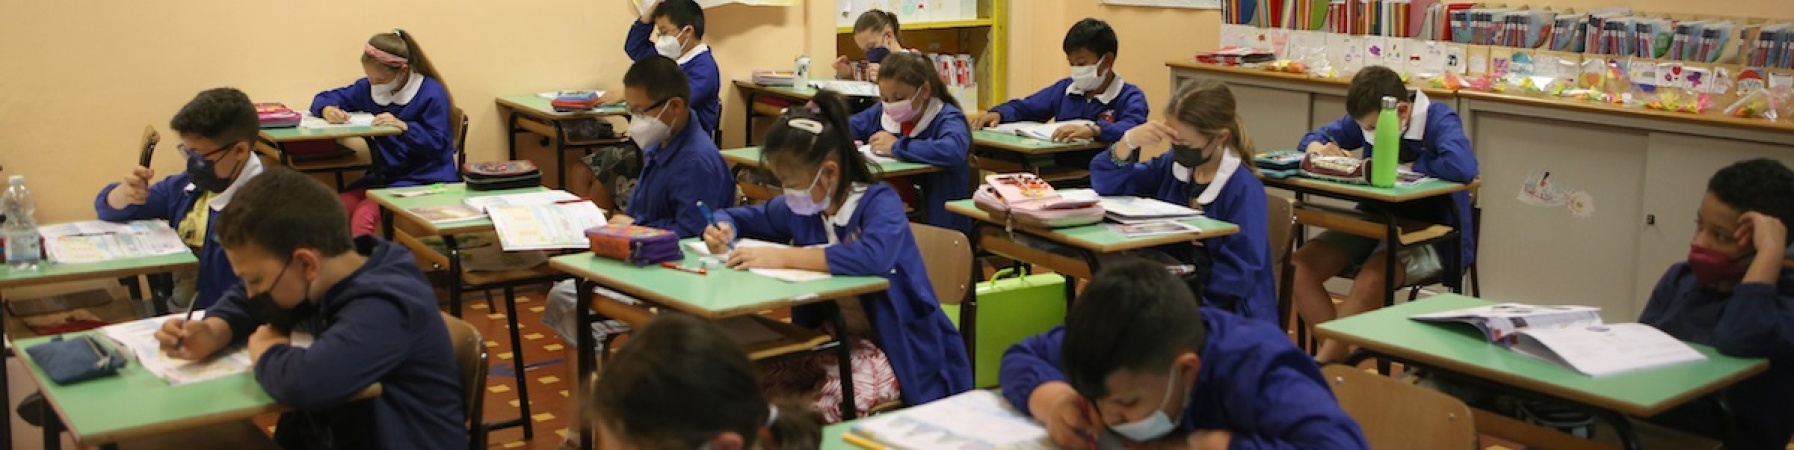 bambine e bambini sui banchi di scuola che scrivono su un foglio 